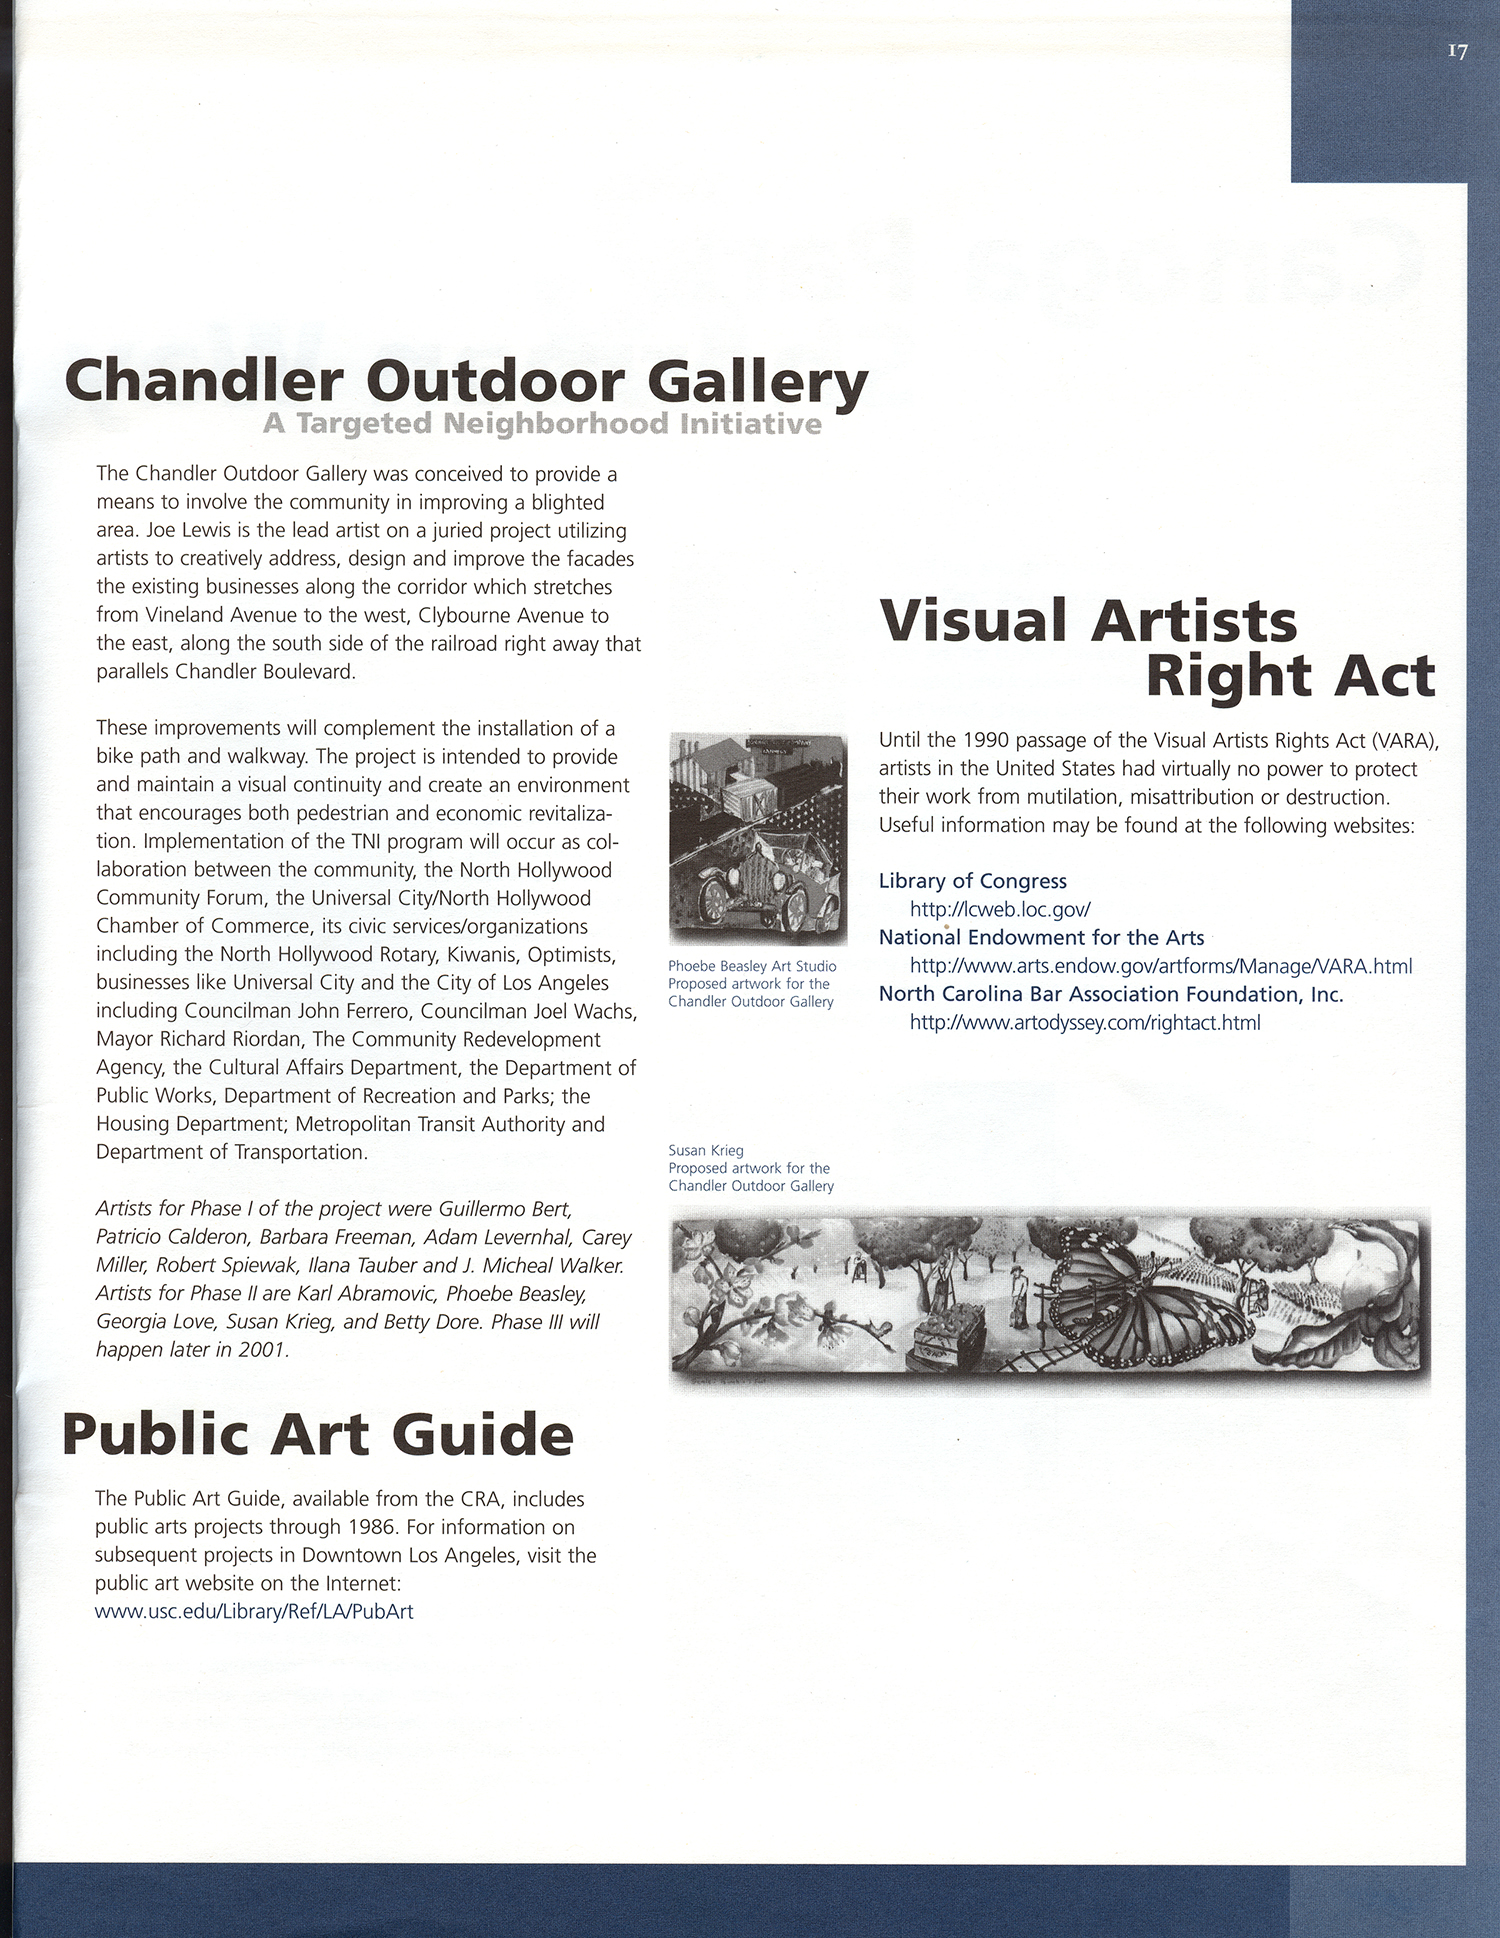 Chandler Outdoor Gallery Article